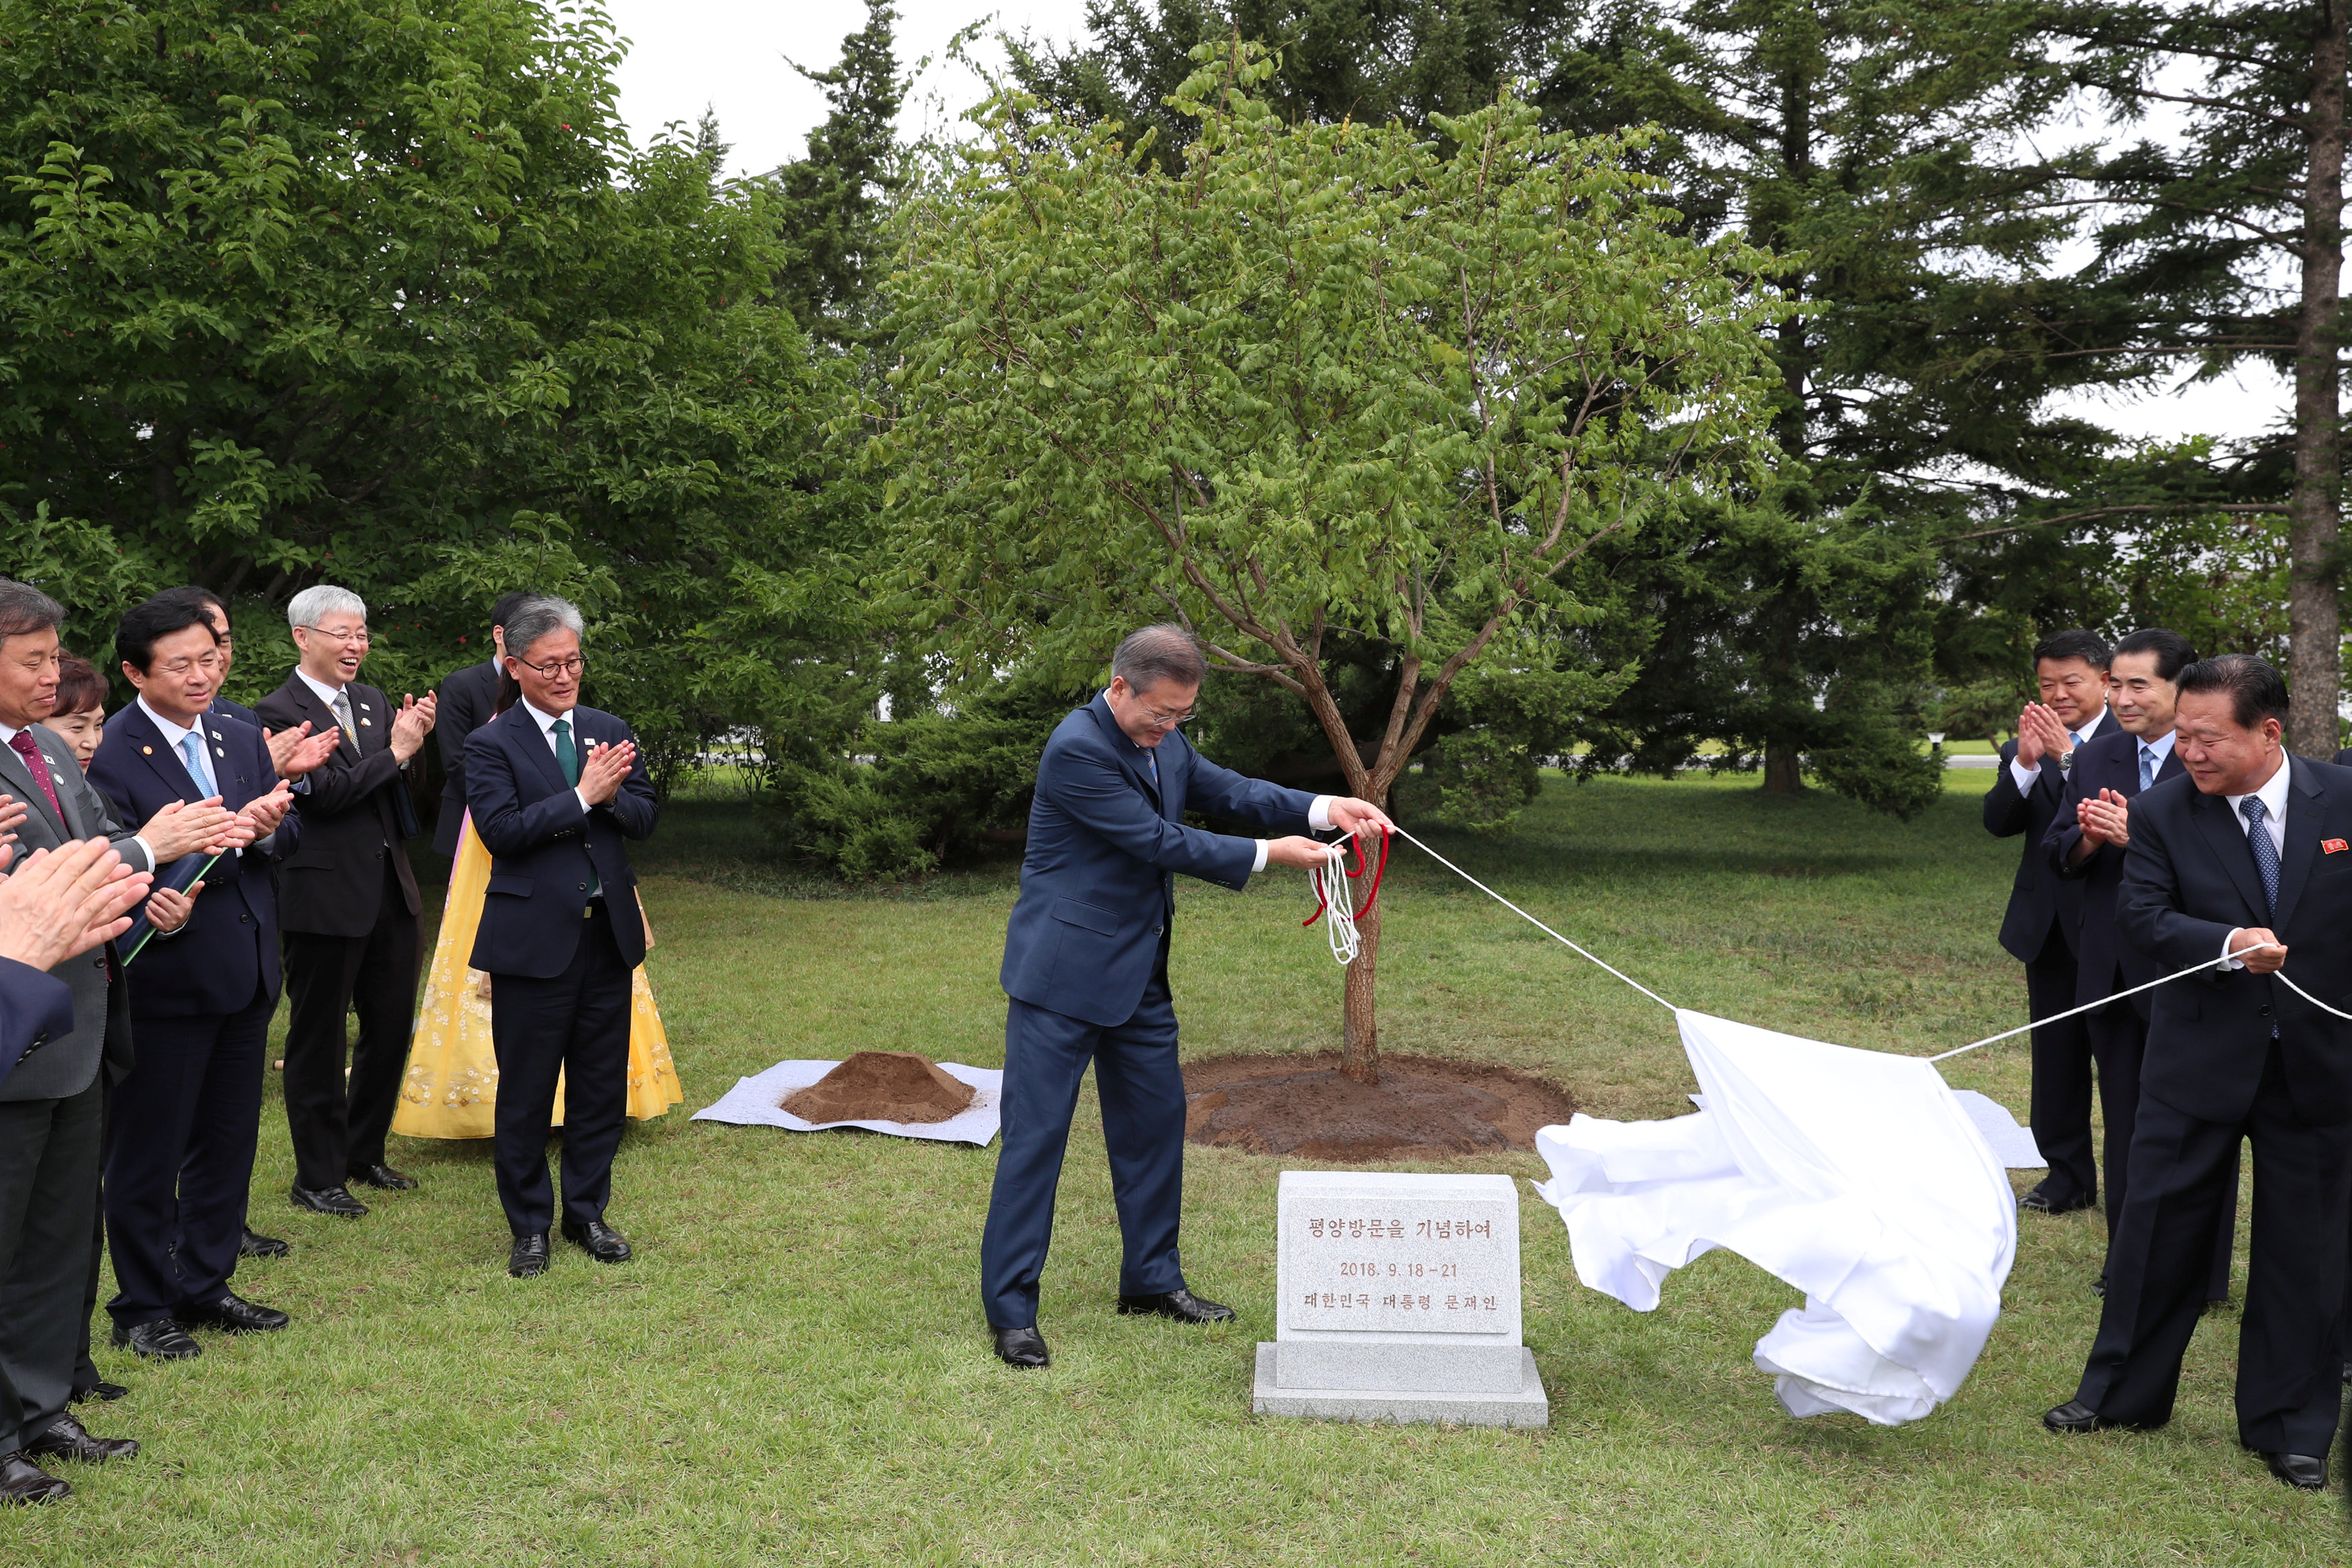 رئيس كوريا الجنوبية يزيح الستار عن شجرة تذكارية بمناسبة زيارته التاريخية لبيونج يانج